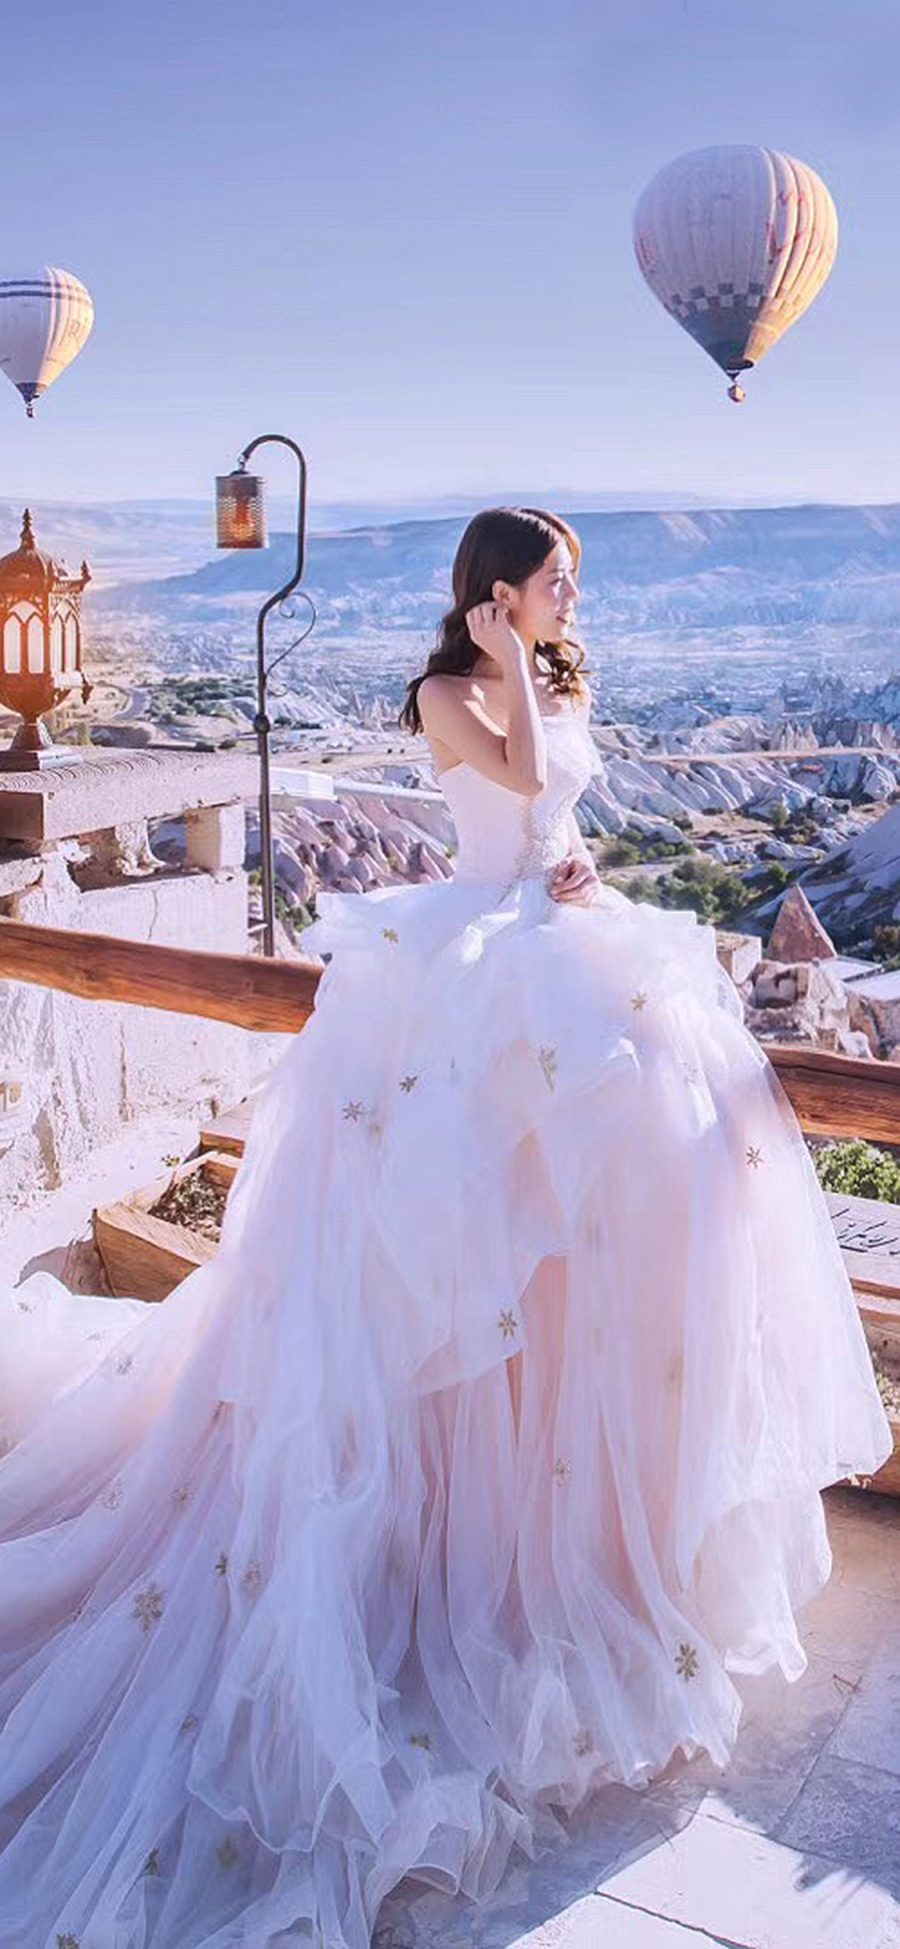 [2436×1125]婚纱 热气球 意境 唯美 苹果手机美女壁纸图片